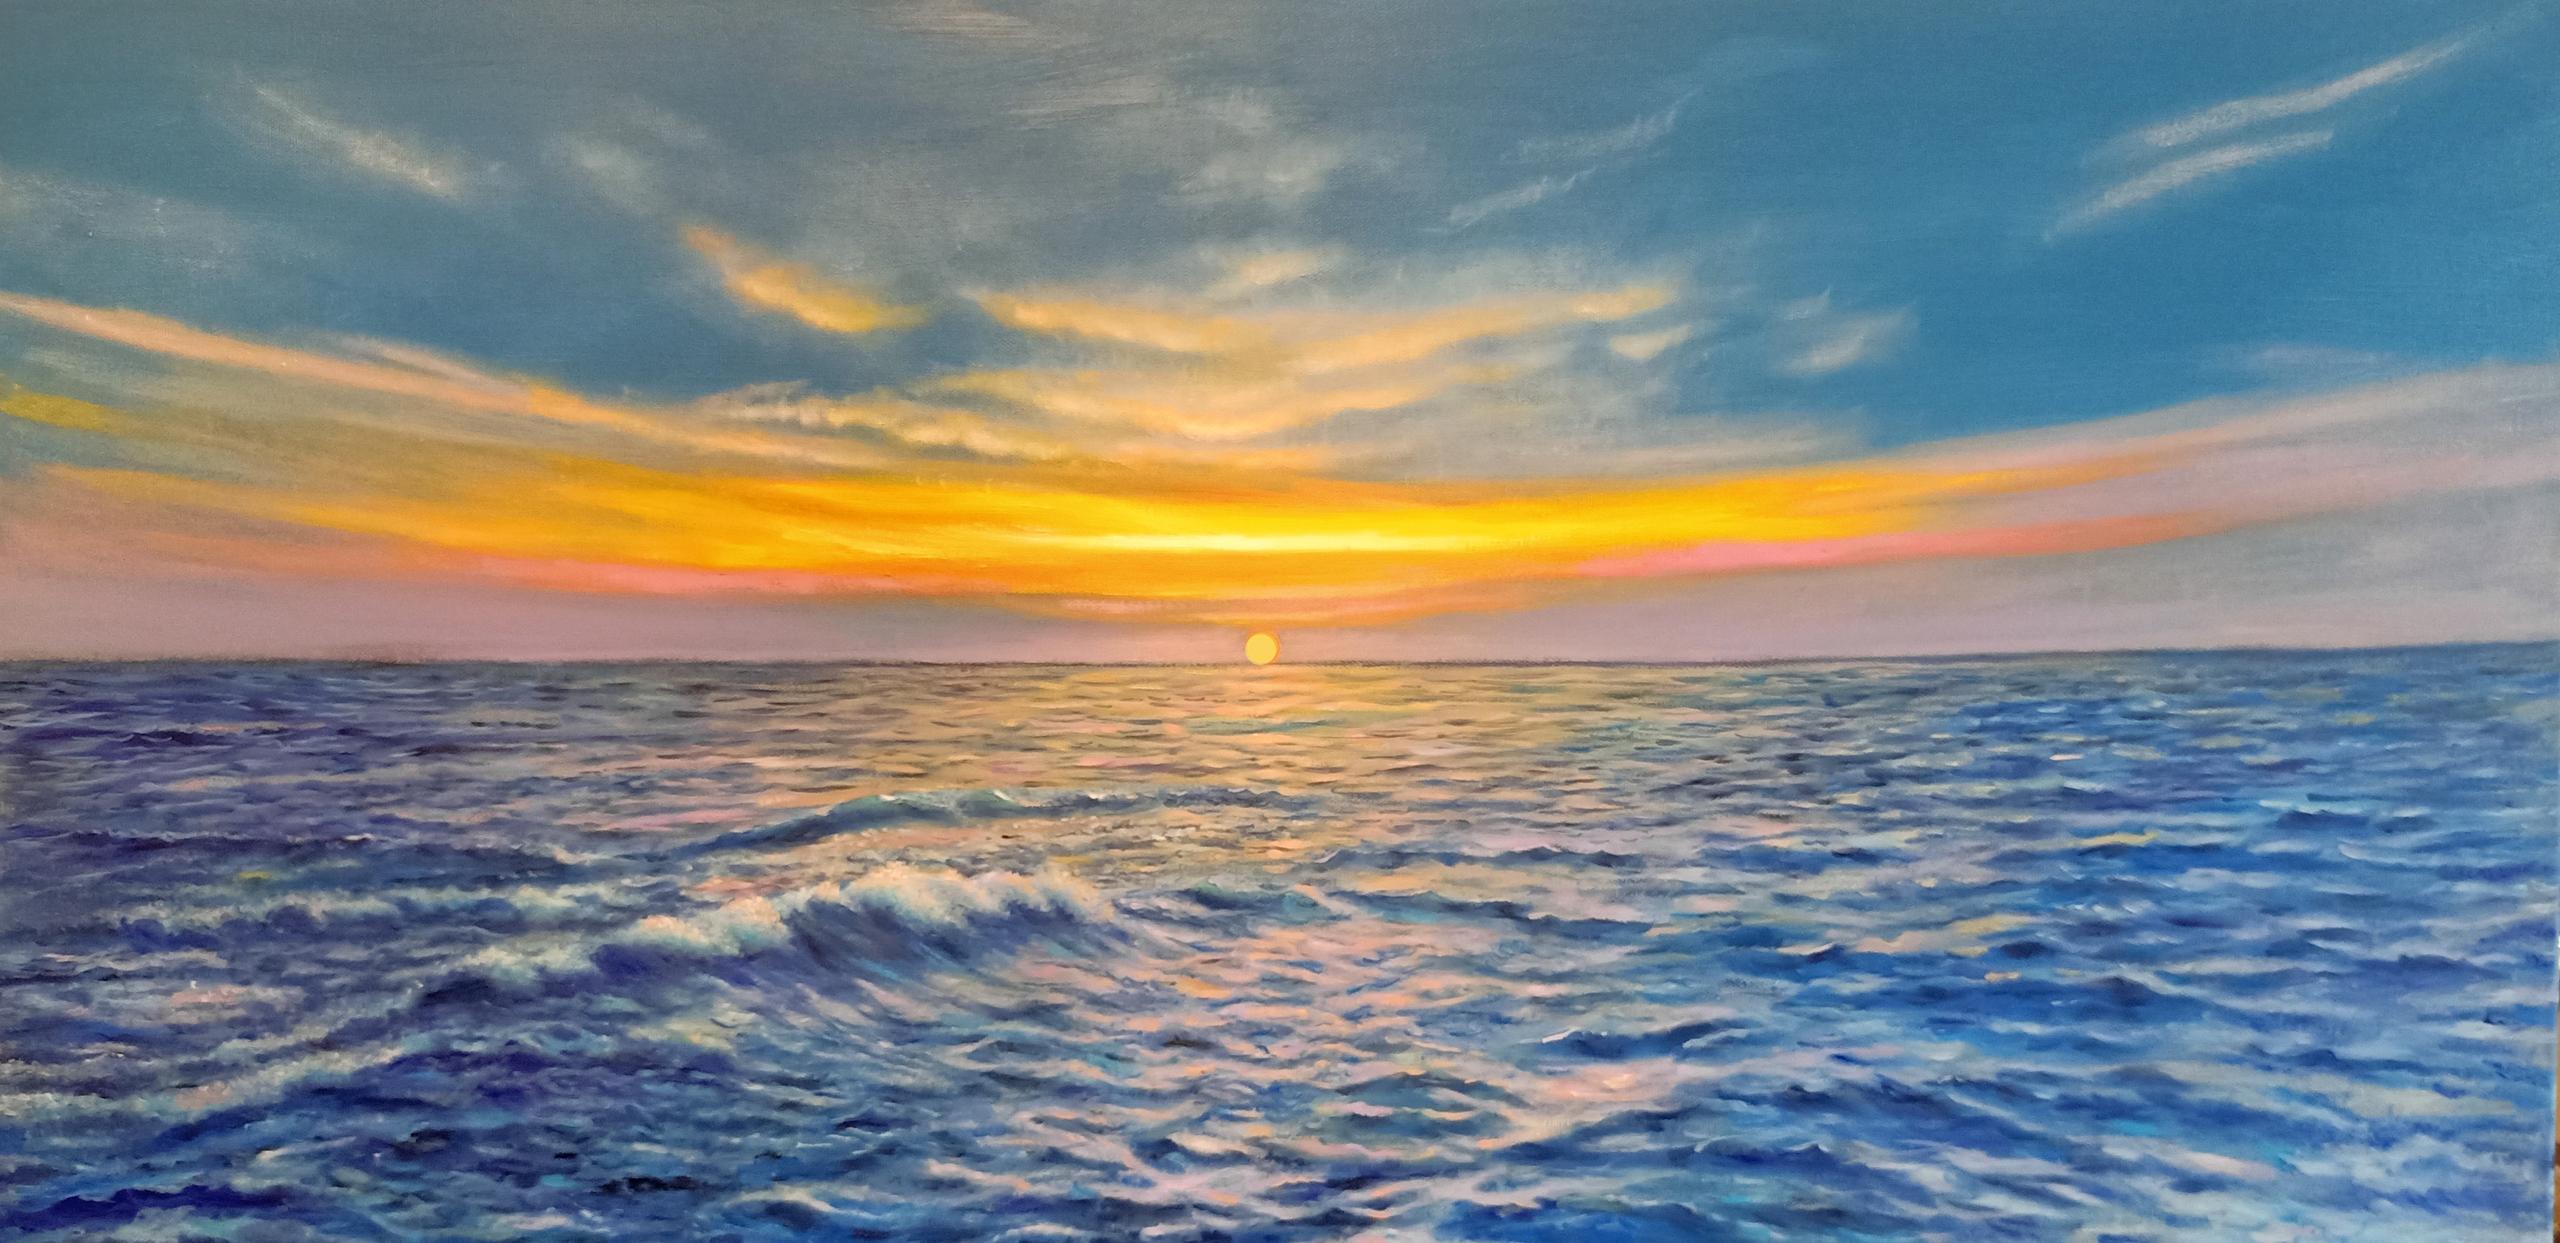 "Tramonto marino" (Marine sunset)